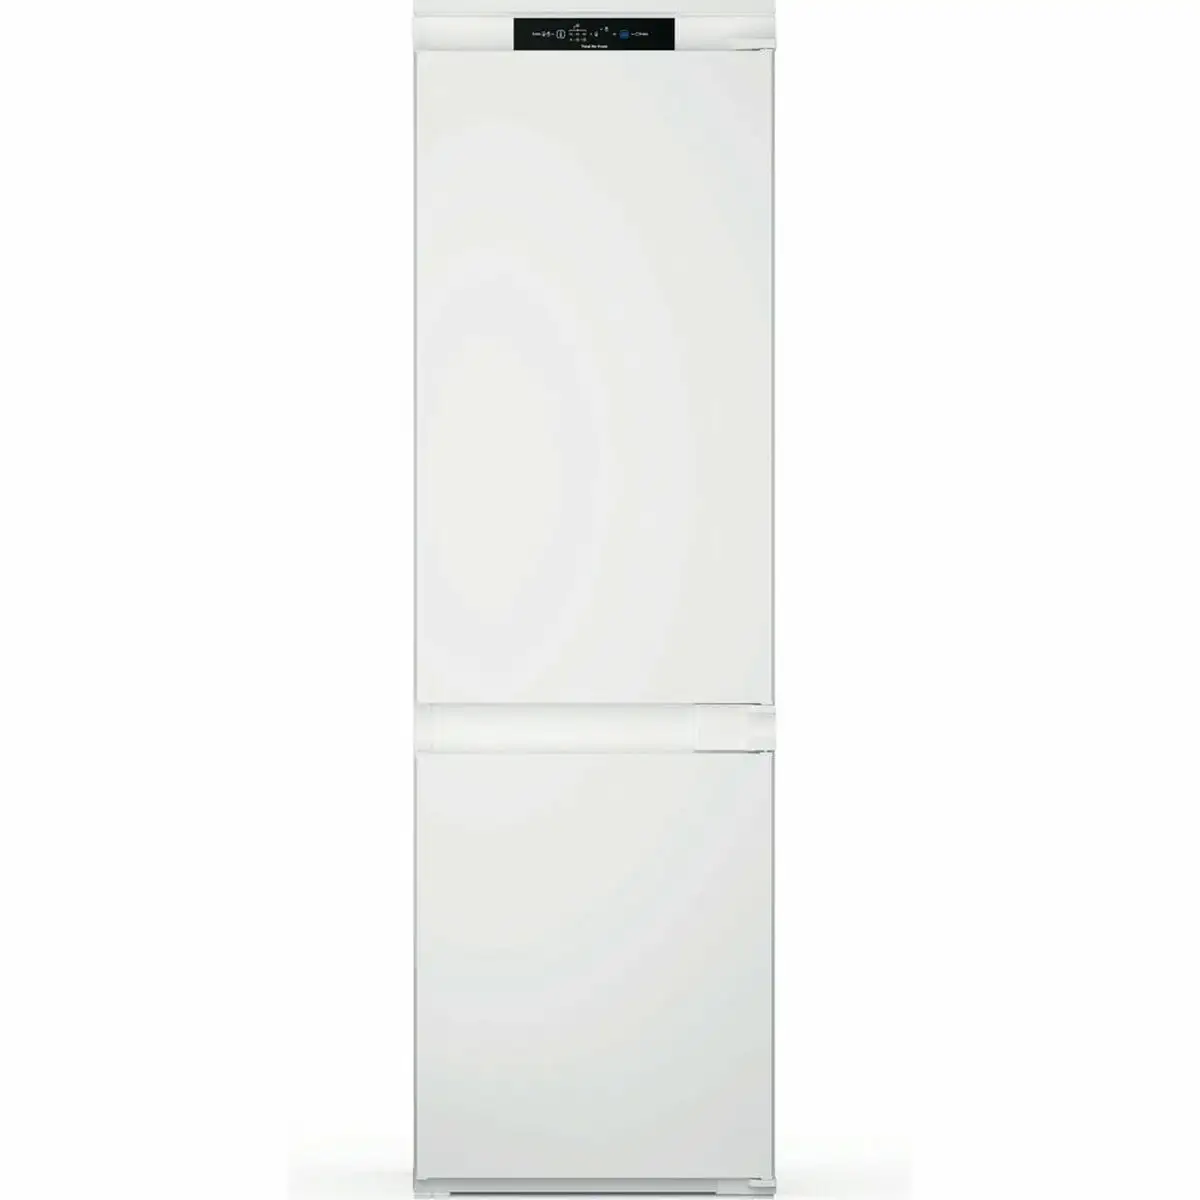 Refrigerateur combine hotpoint ariston inc18t311 blanc 177 x 54 cm _8159. DIAYTAR SENEGAL - Là où Chaque Achat a du Sens. Explorez notre gamme et choisissez des produits qui racontent une histoire, votre histoire.